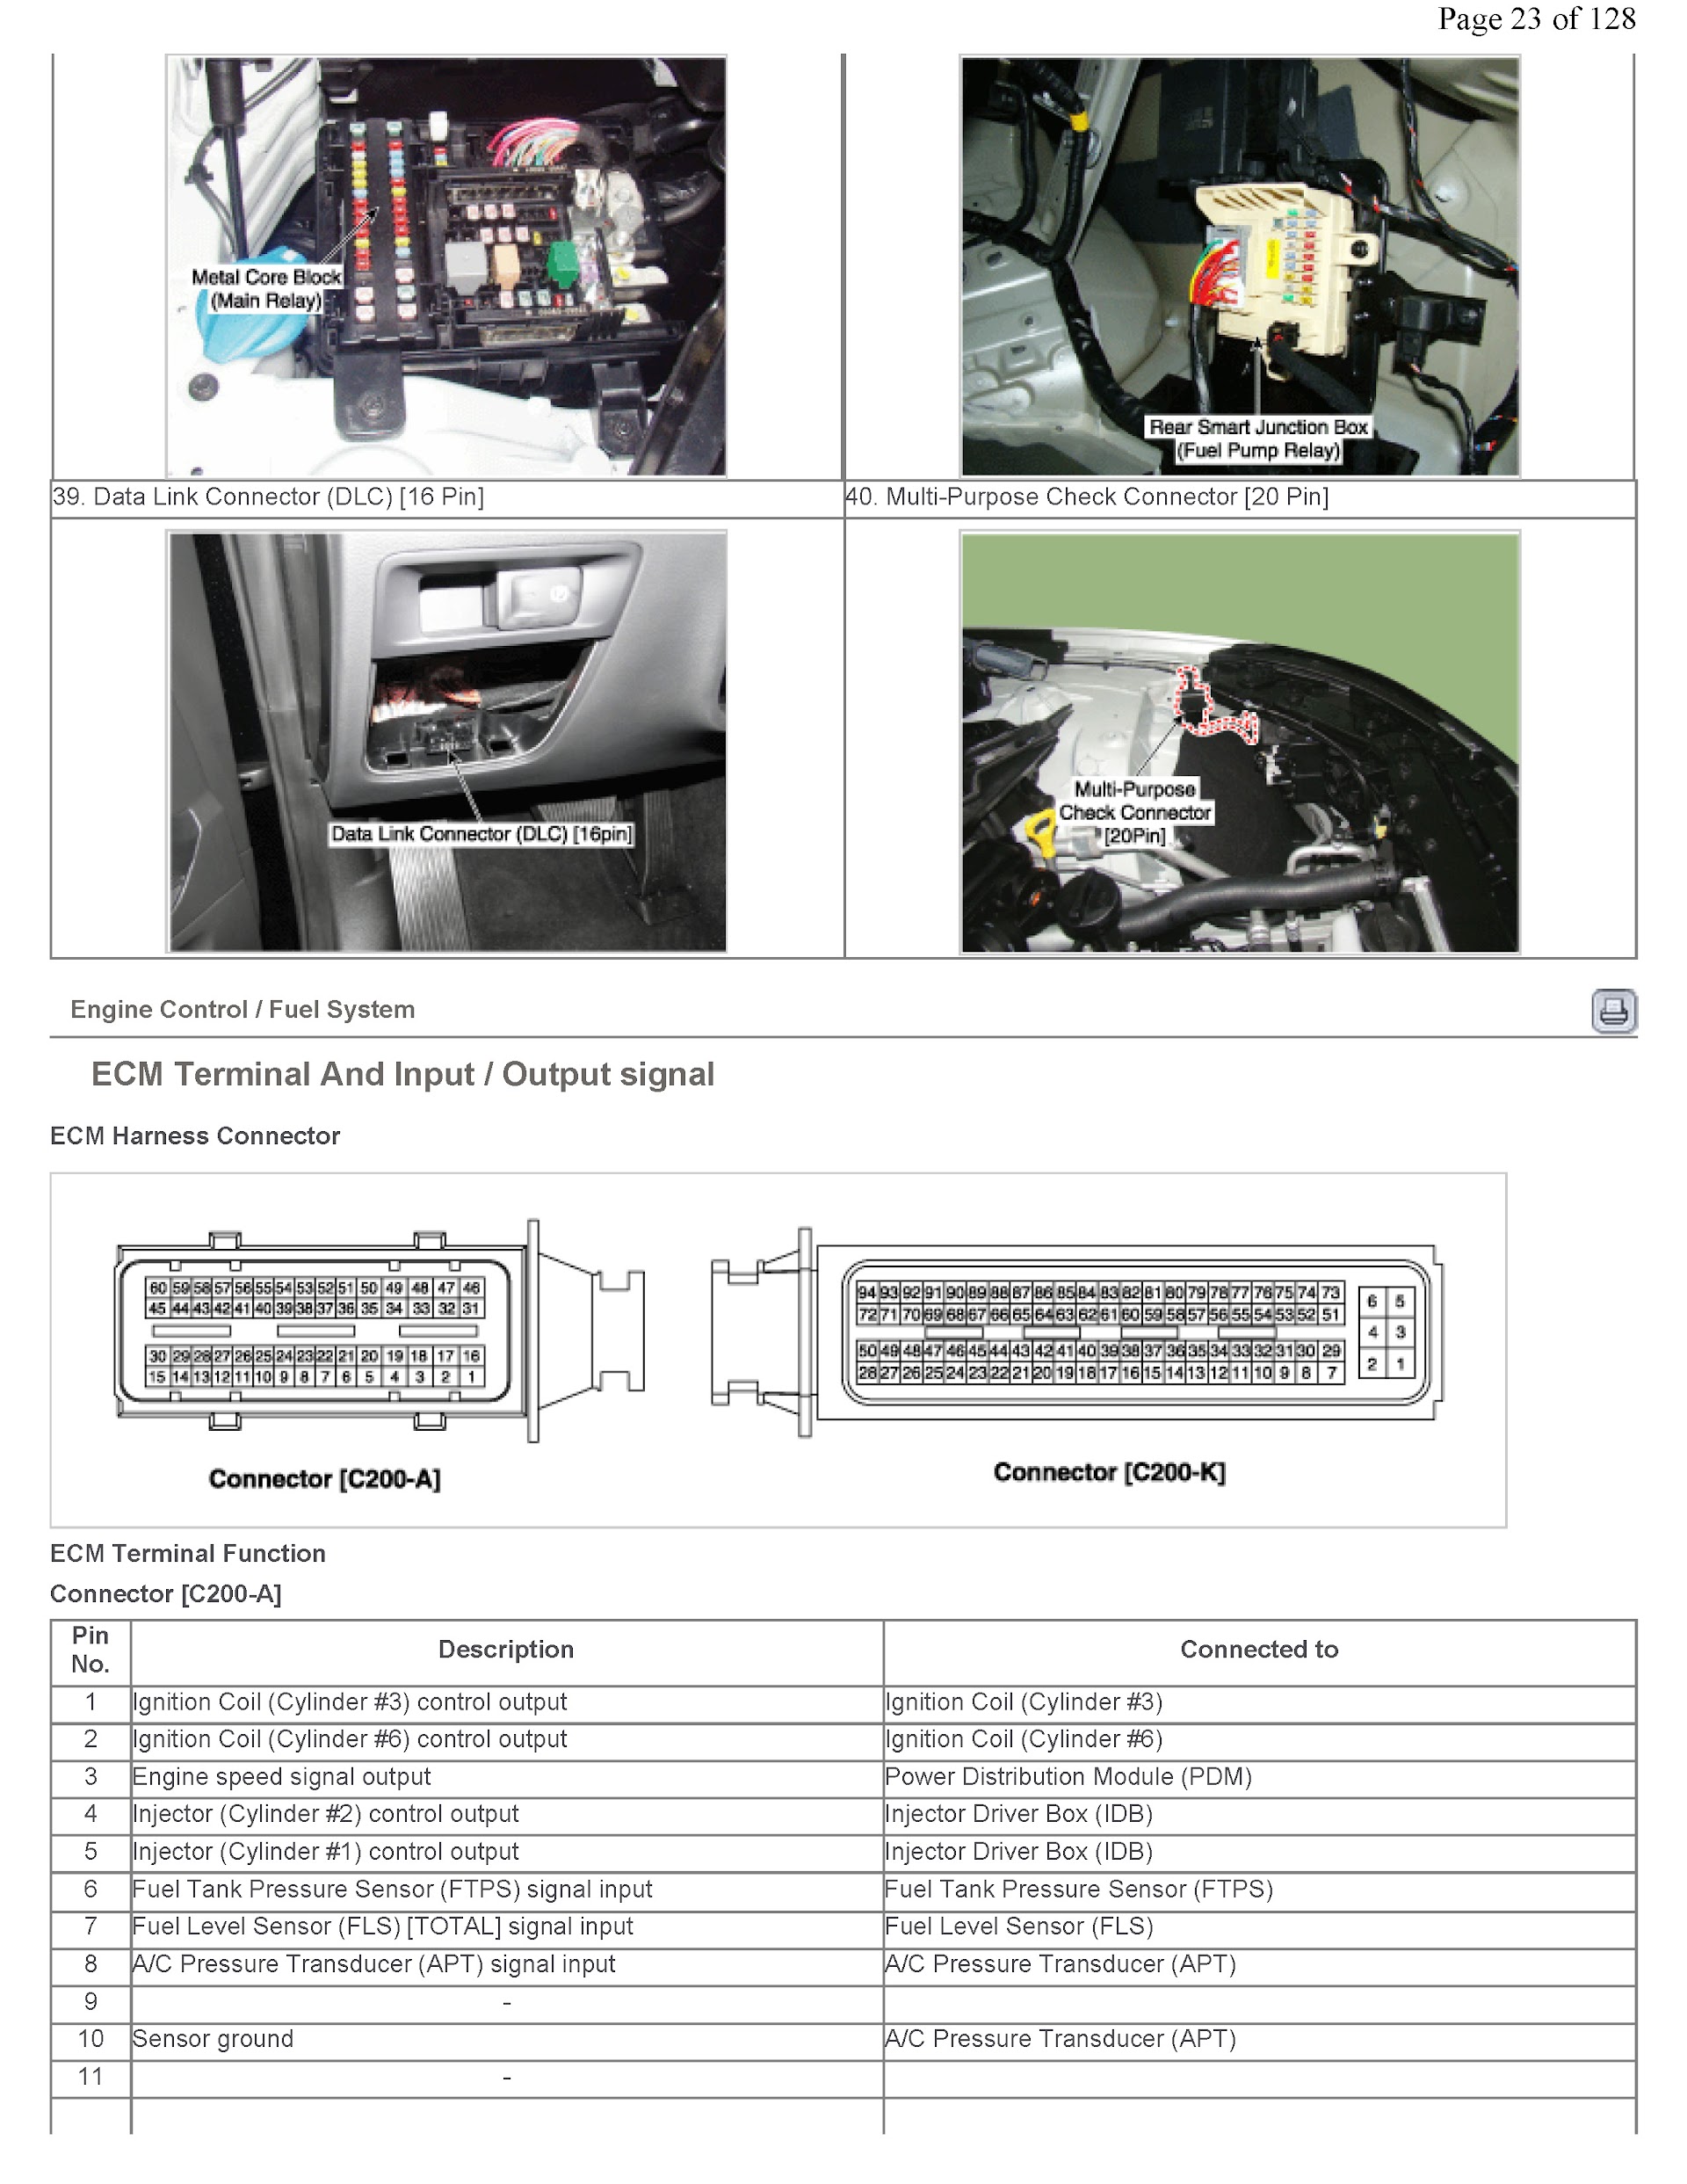 2013-2016 Hyundai Genesis Repair Manual, ECM Terminal Inputs Signal